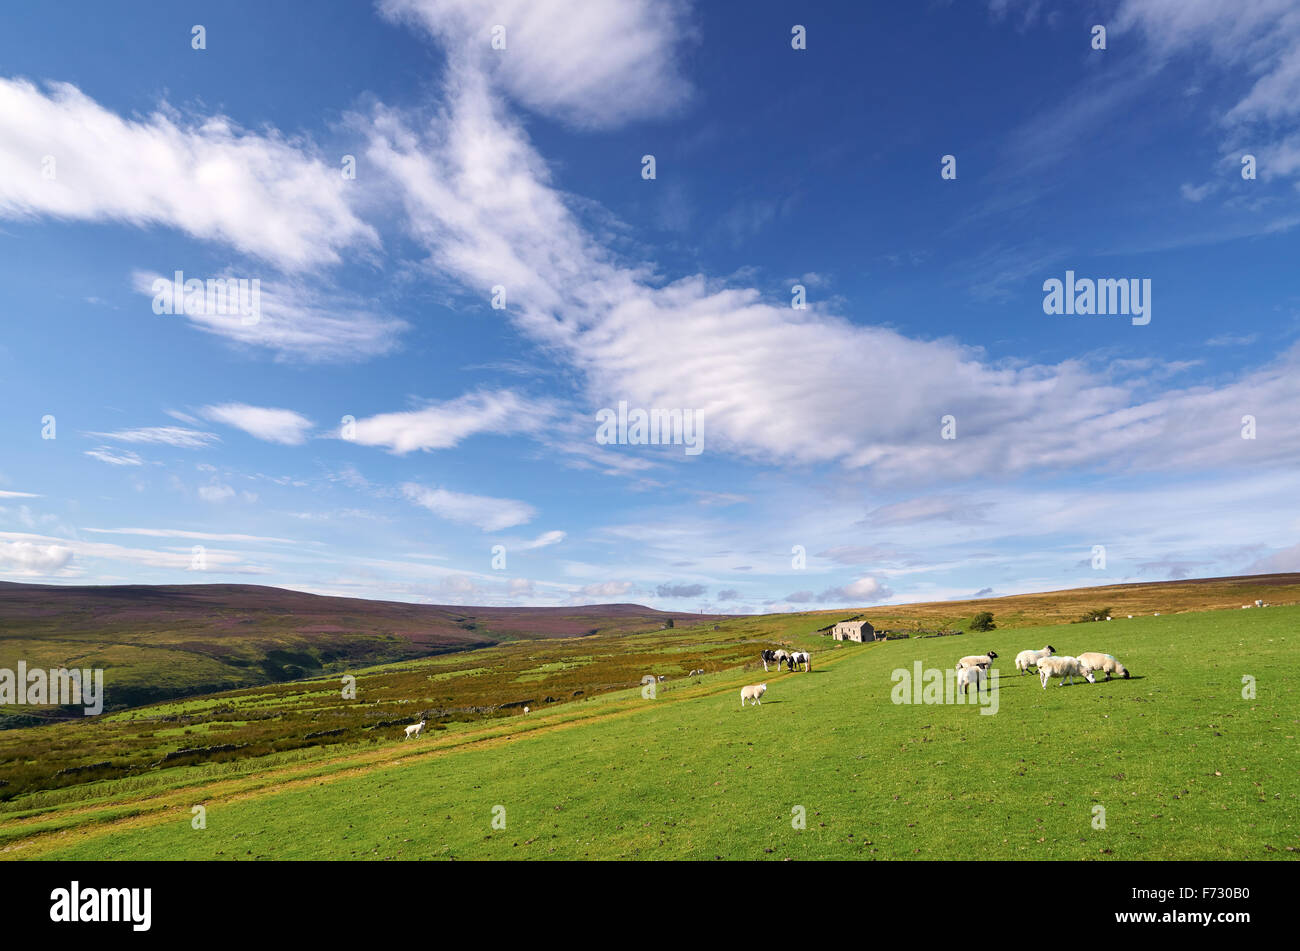 Bestiame sui terreni agricoli a Edmunbyers Comune nella Contea di Durham, campagna inglese. Foto Stock